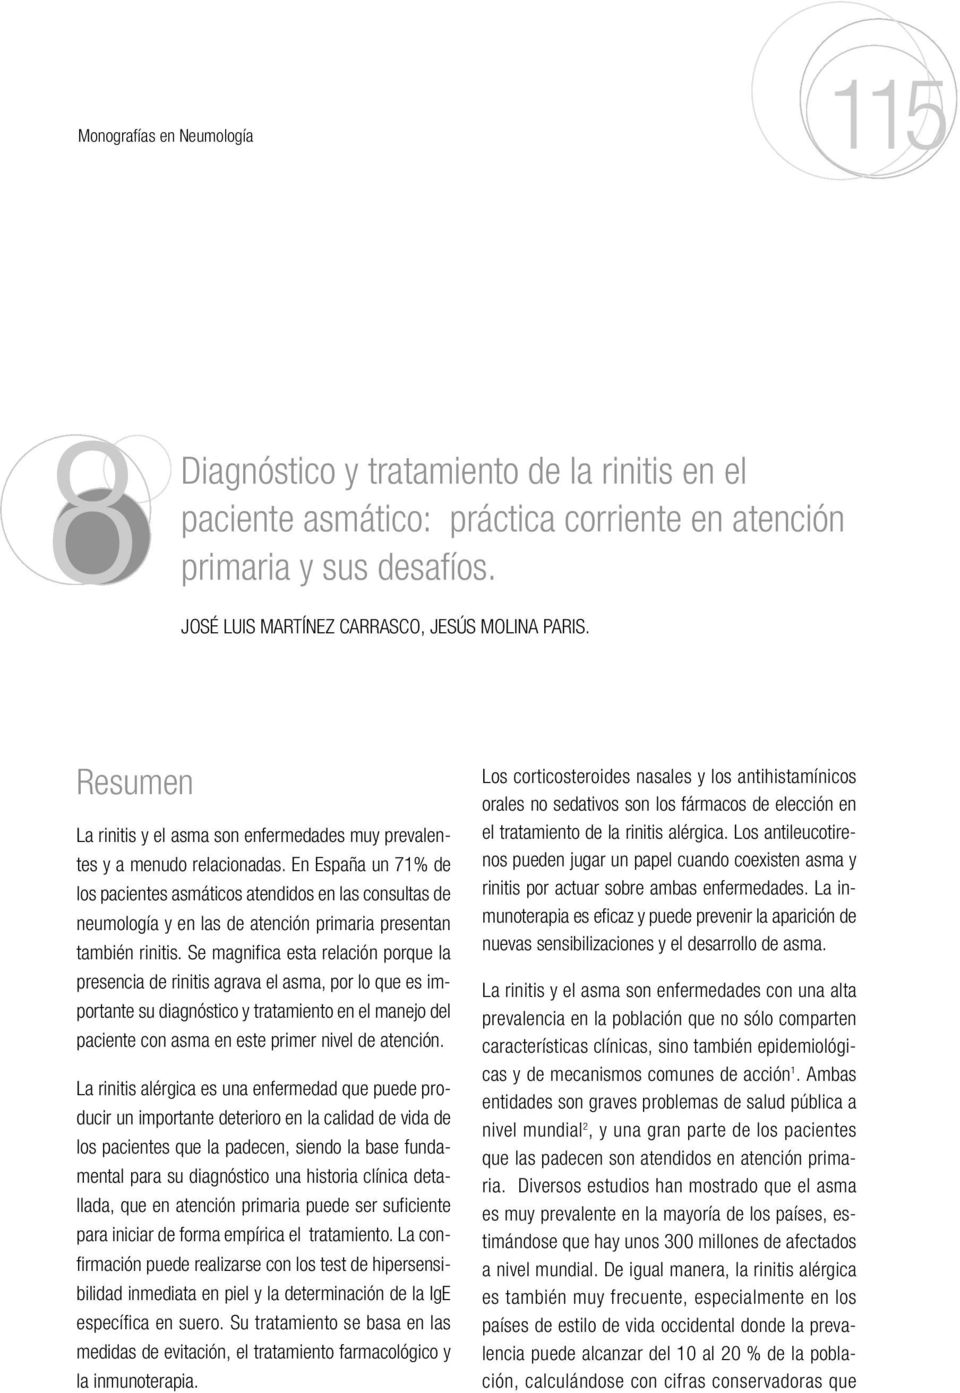 En España un 71% de los pacientes asmáticos atendidos en las consultas de neumología y en las de atención primaria presentan también rinitis.